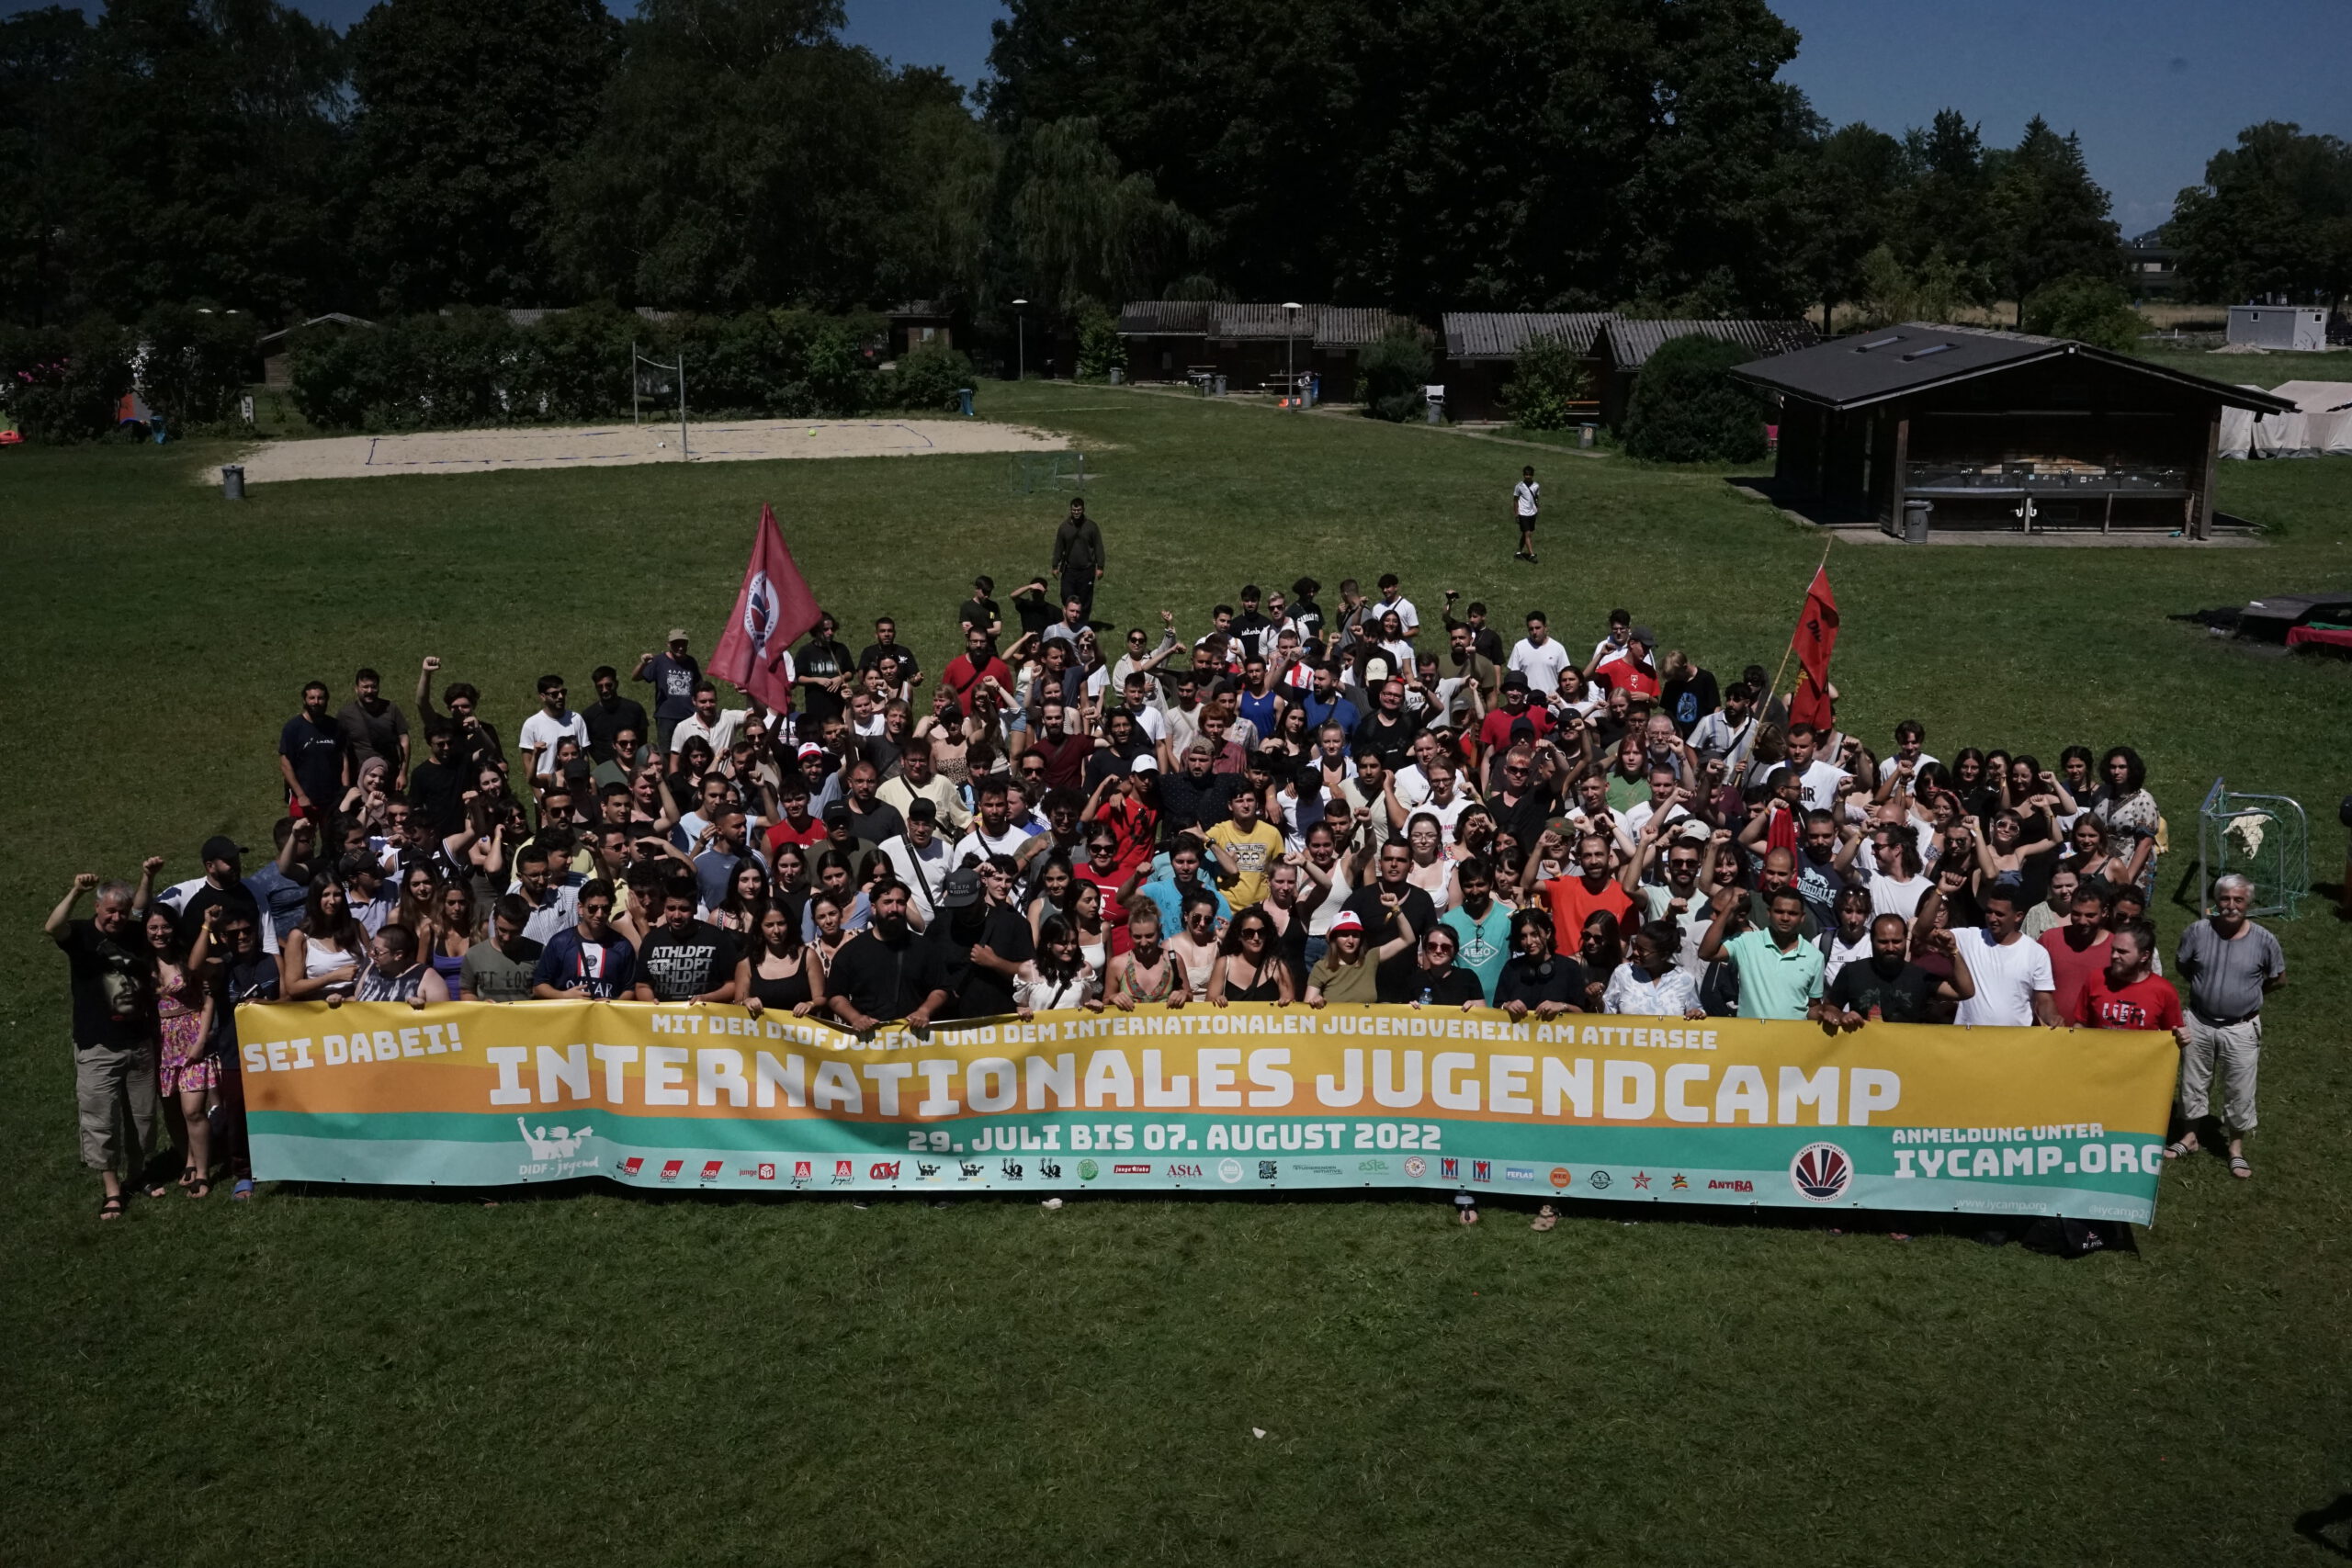 Das internationale, antifaschistische Jugendcamp 2022!